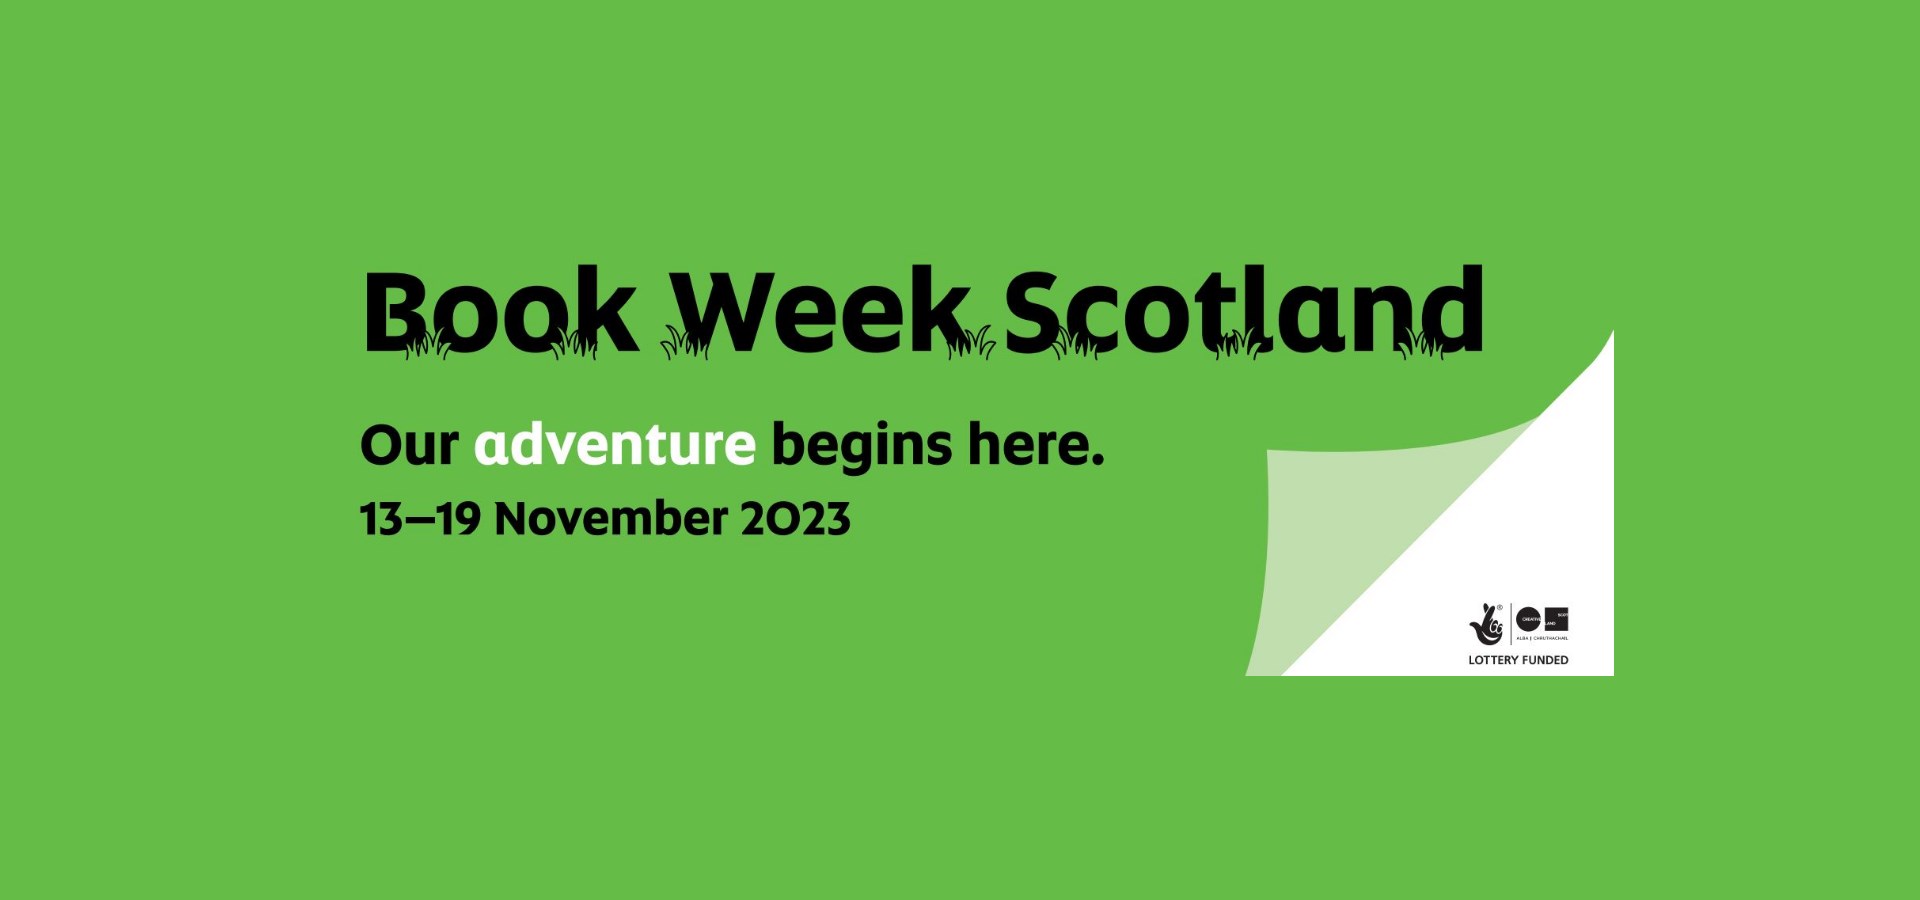 Book Week Scotland logos